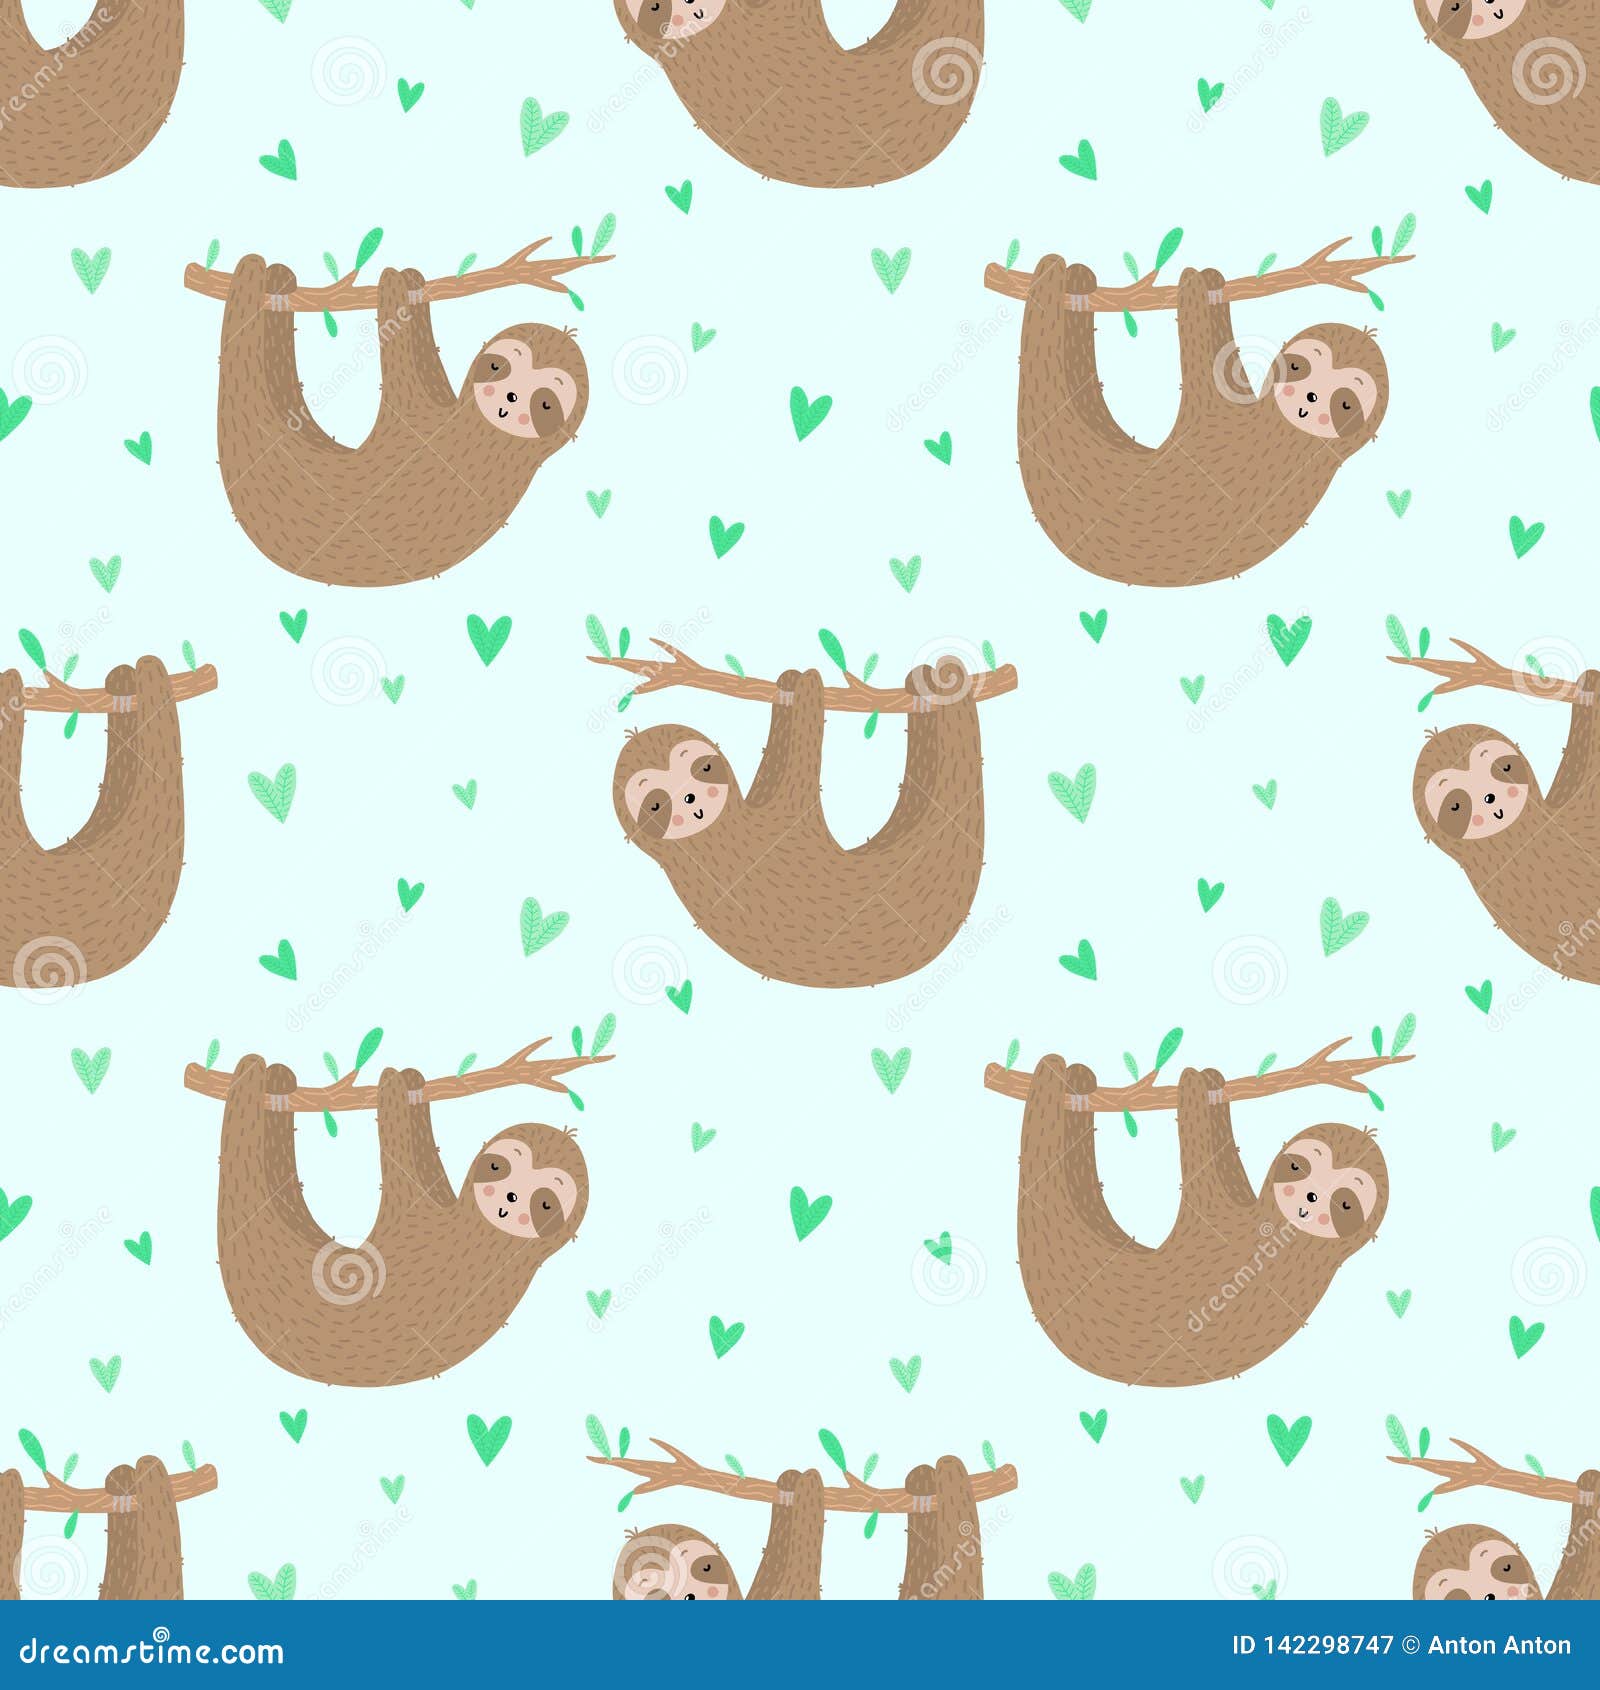 Hãy trải nghiệm mẫu sloth vẽ tay ngộ nghĩnh này, sản phẩm của nghệ sĩ tài ba. Với nhiều hình ảnh đáng yêu của chú lười độn, mẫu sloth này là một trong những lựa chọn tuyệt vời để thể hiện tình yêu của bạn với animal print.